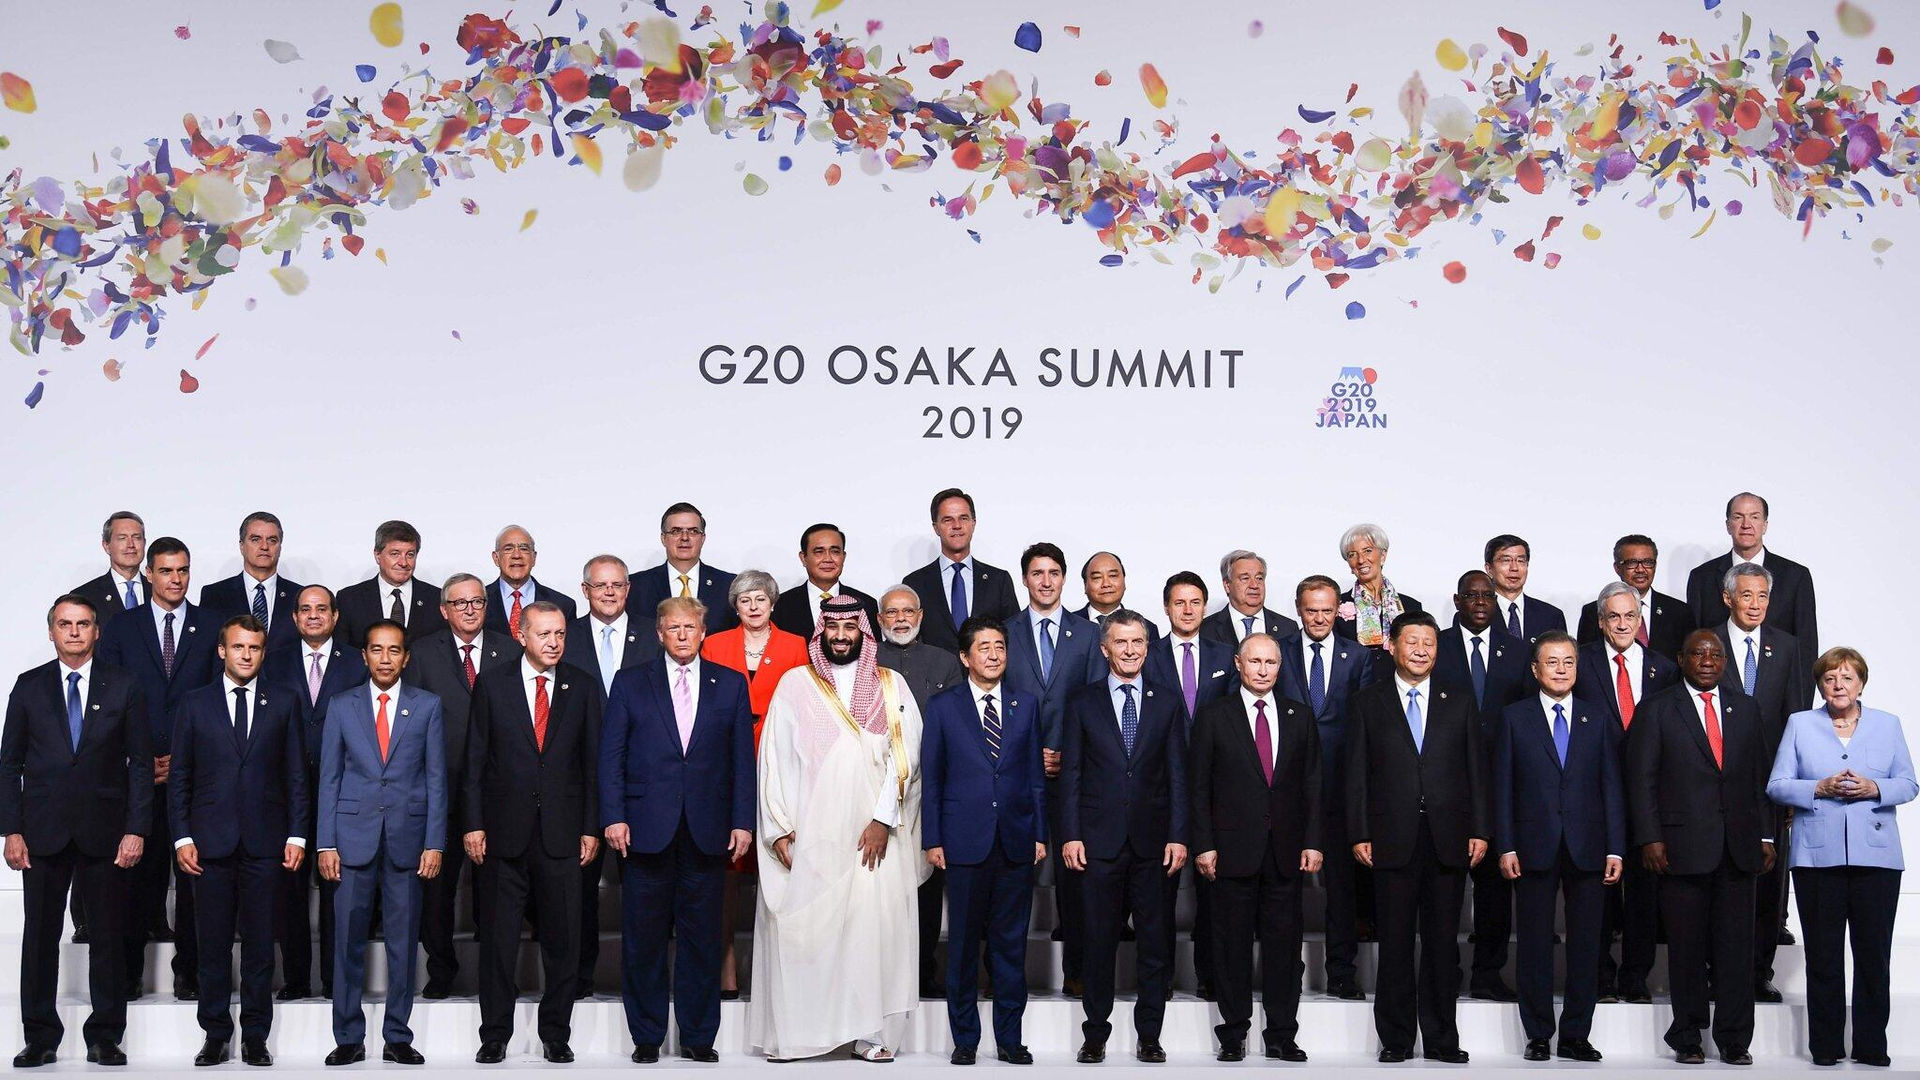 Tài chính Công bằng châu Á kêu gọi các nhà lãnh đạo G20 tăng cường nguồn tài chính bền vững, trách nhiệm.